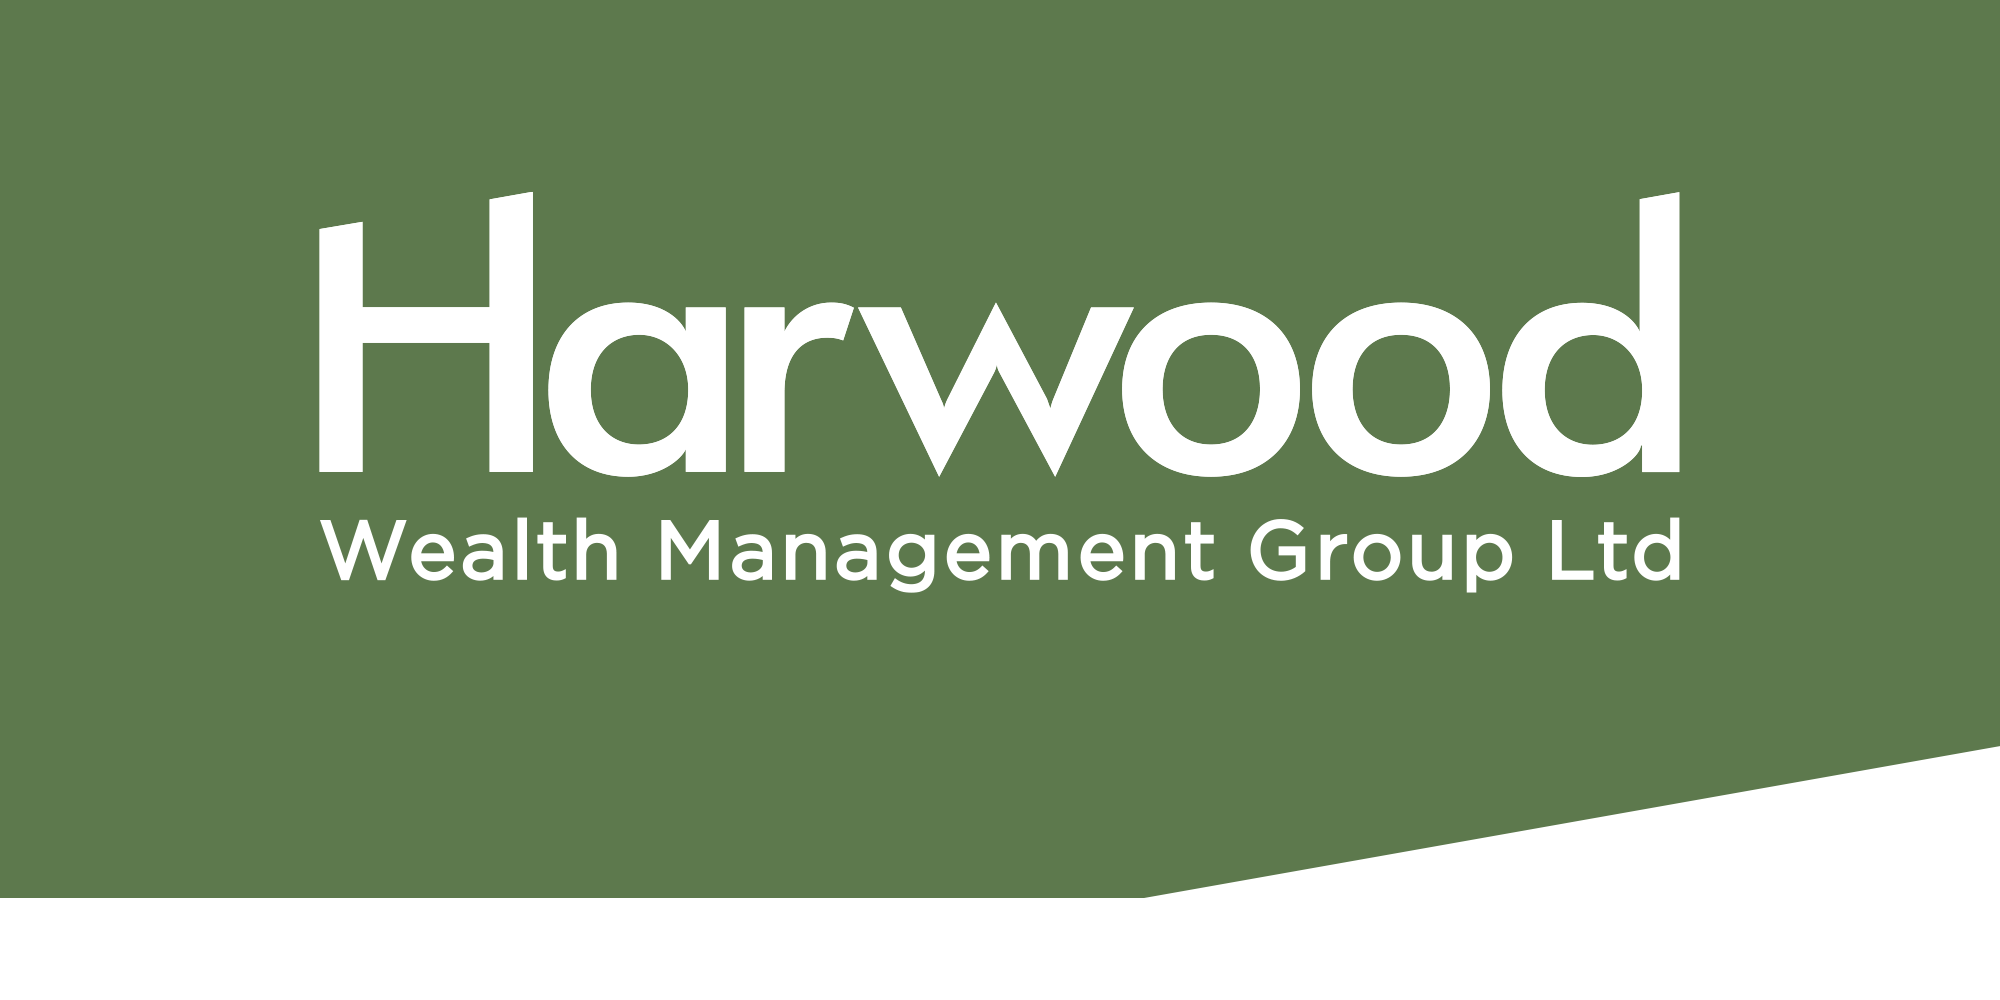 Harwood Wealth Management Group Ltd